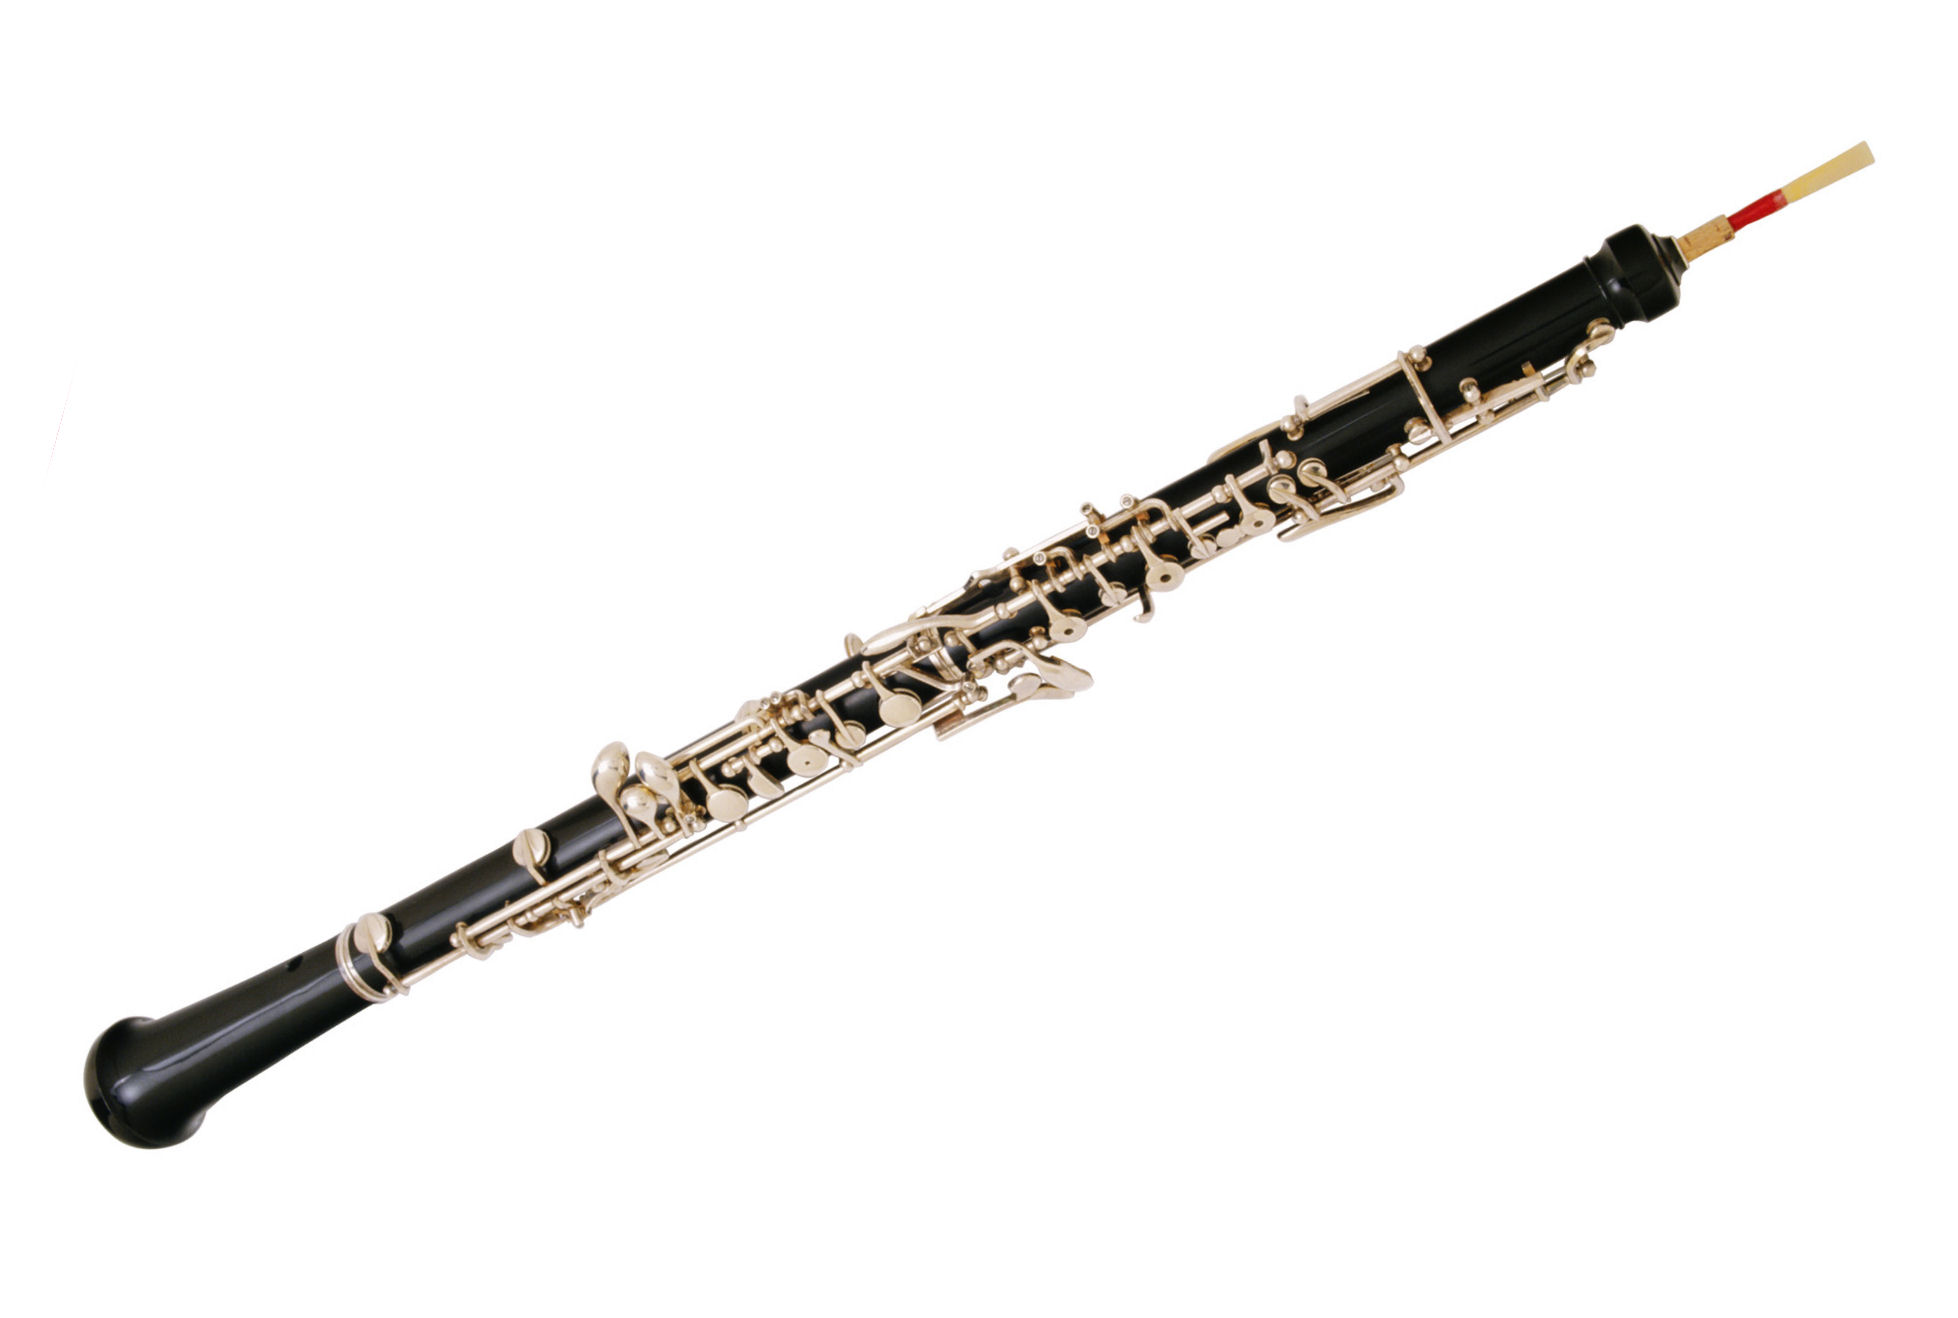 Oboe.jpg